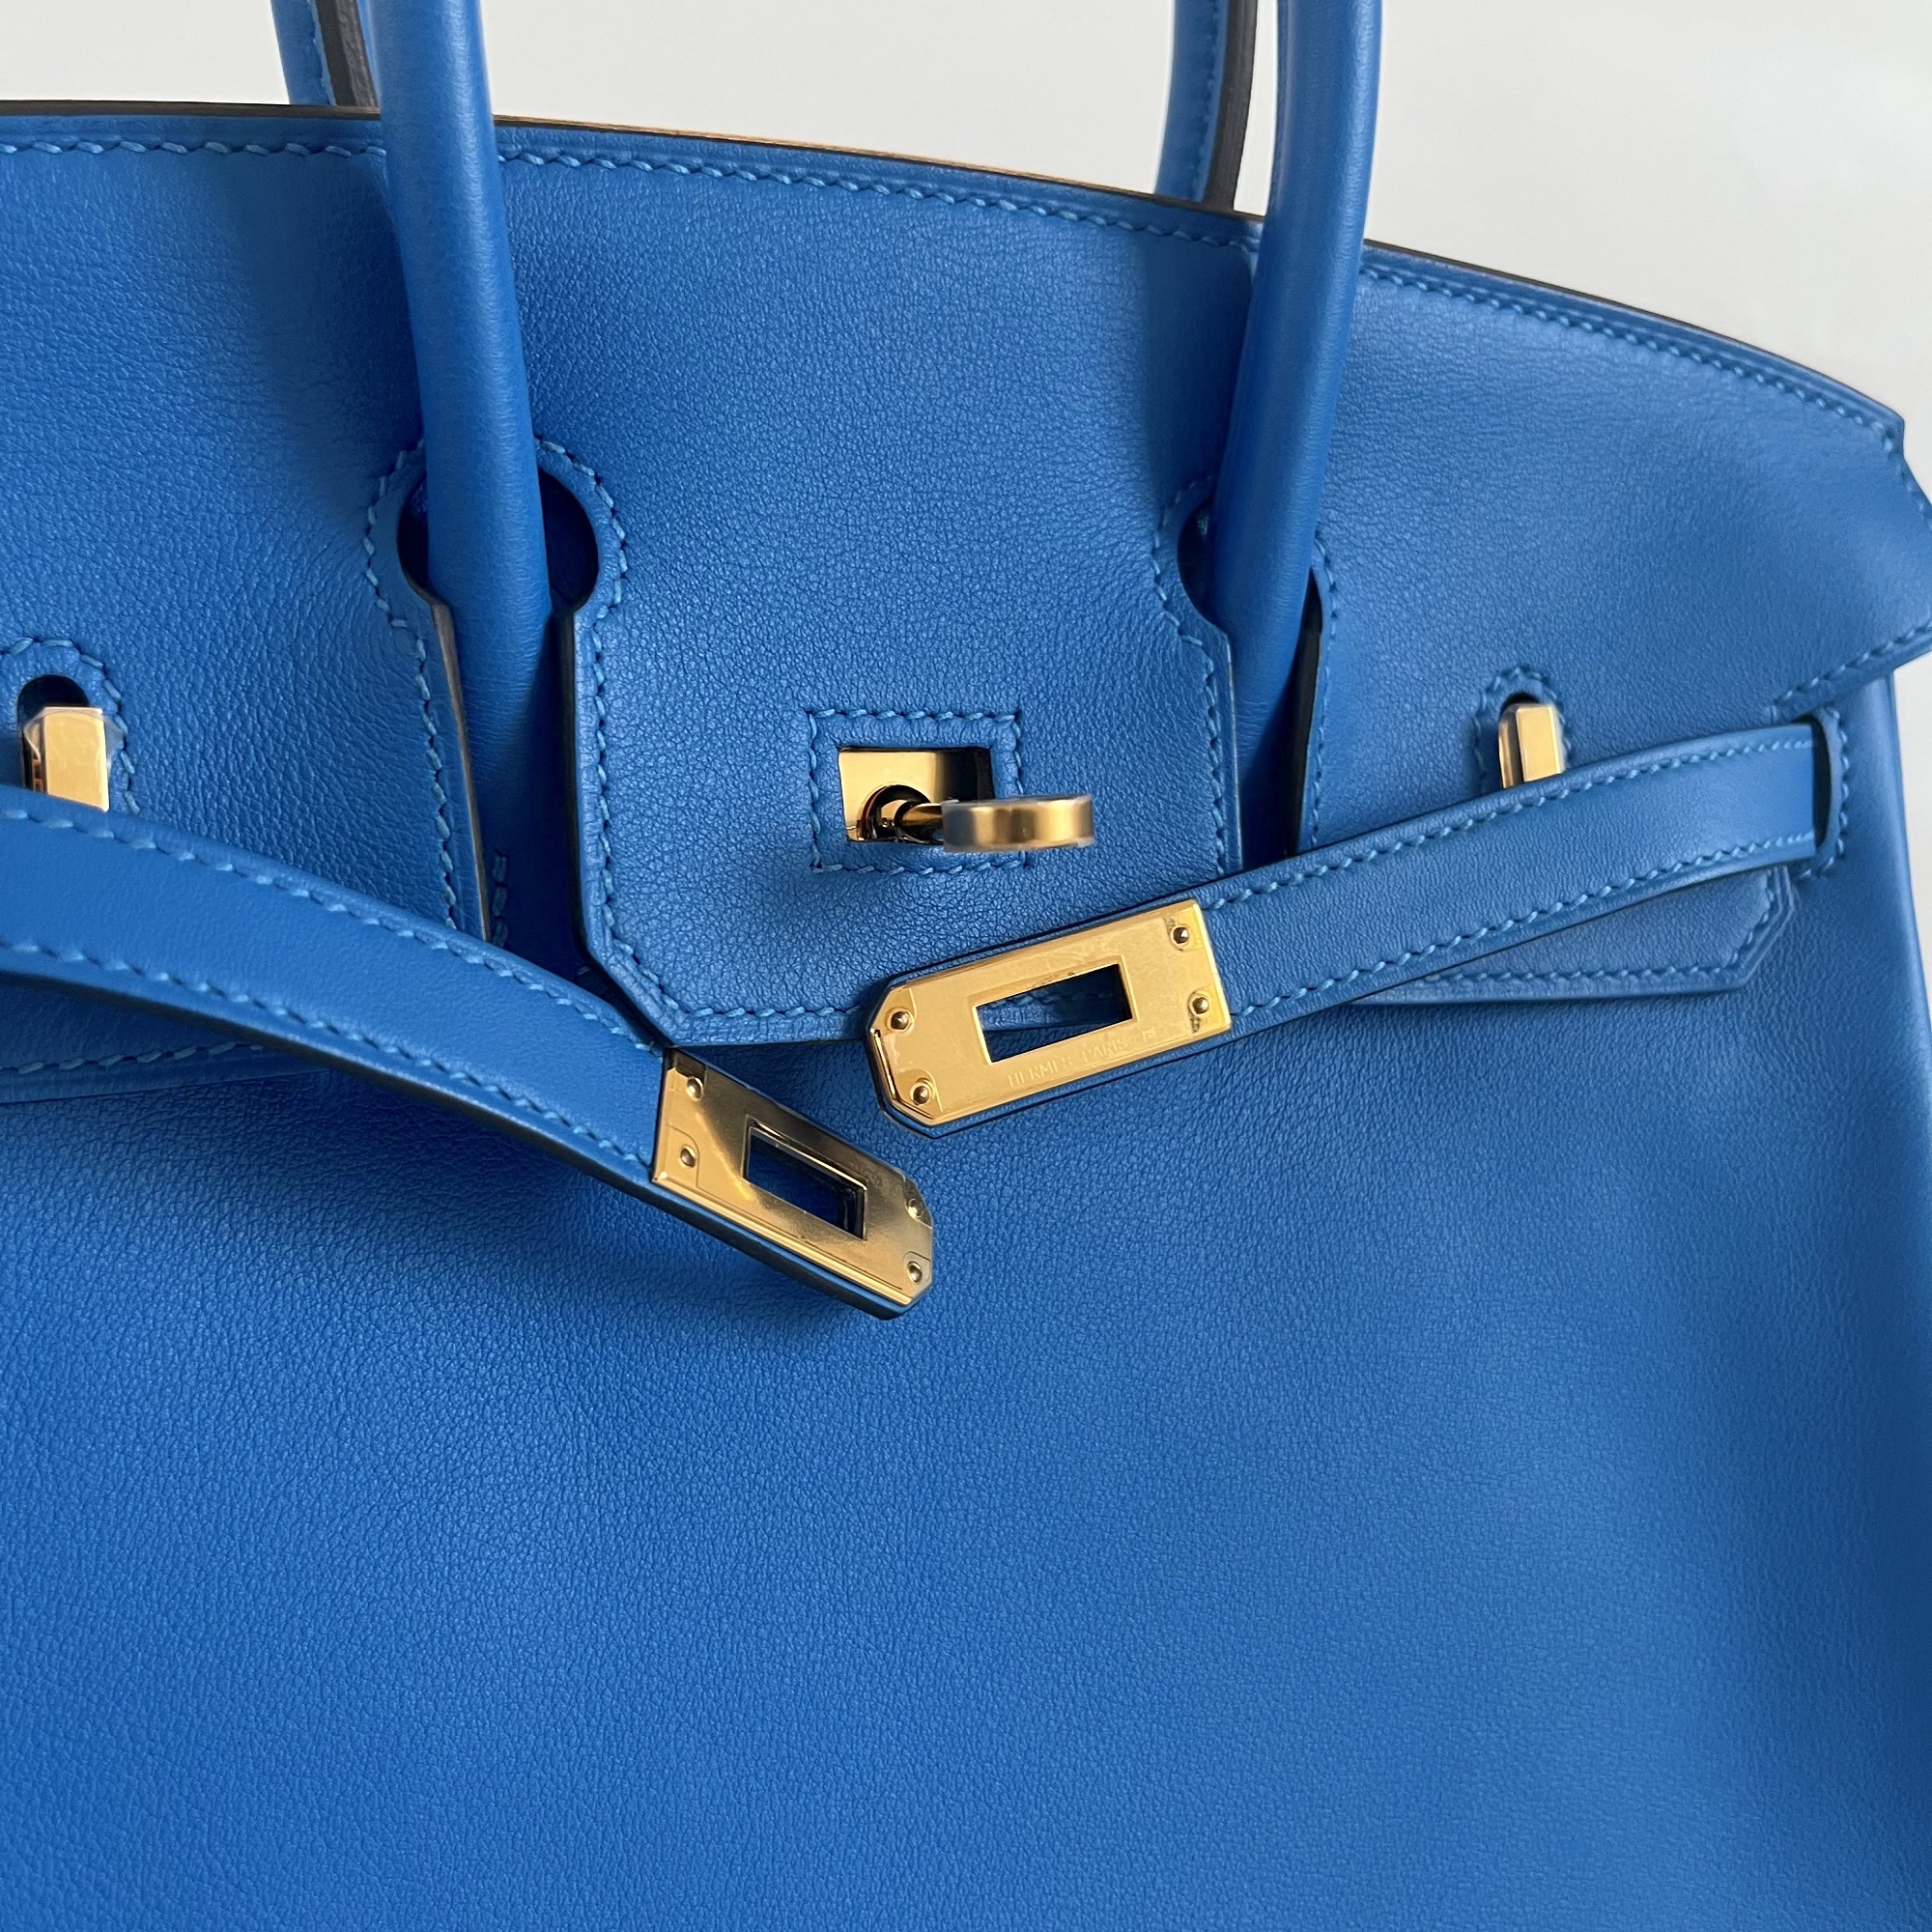 Hermes Blue Swift Leather Gold Hardware Birkin 25 Bag